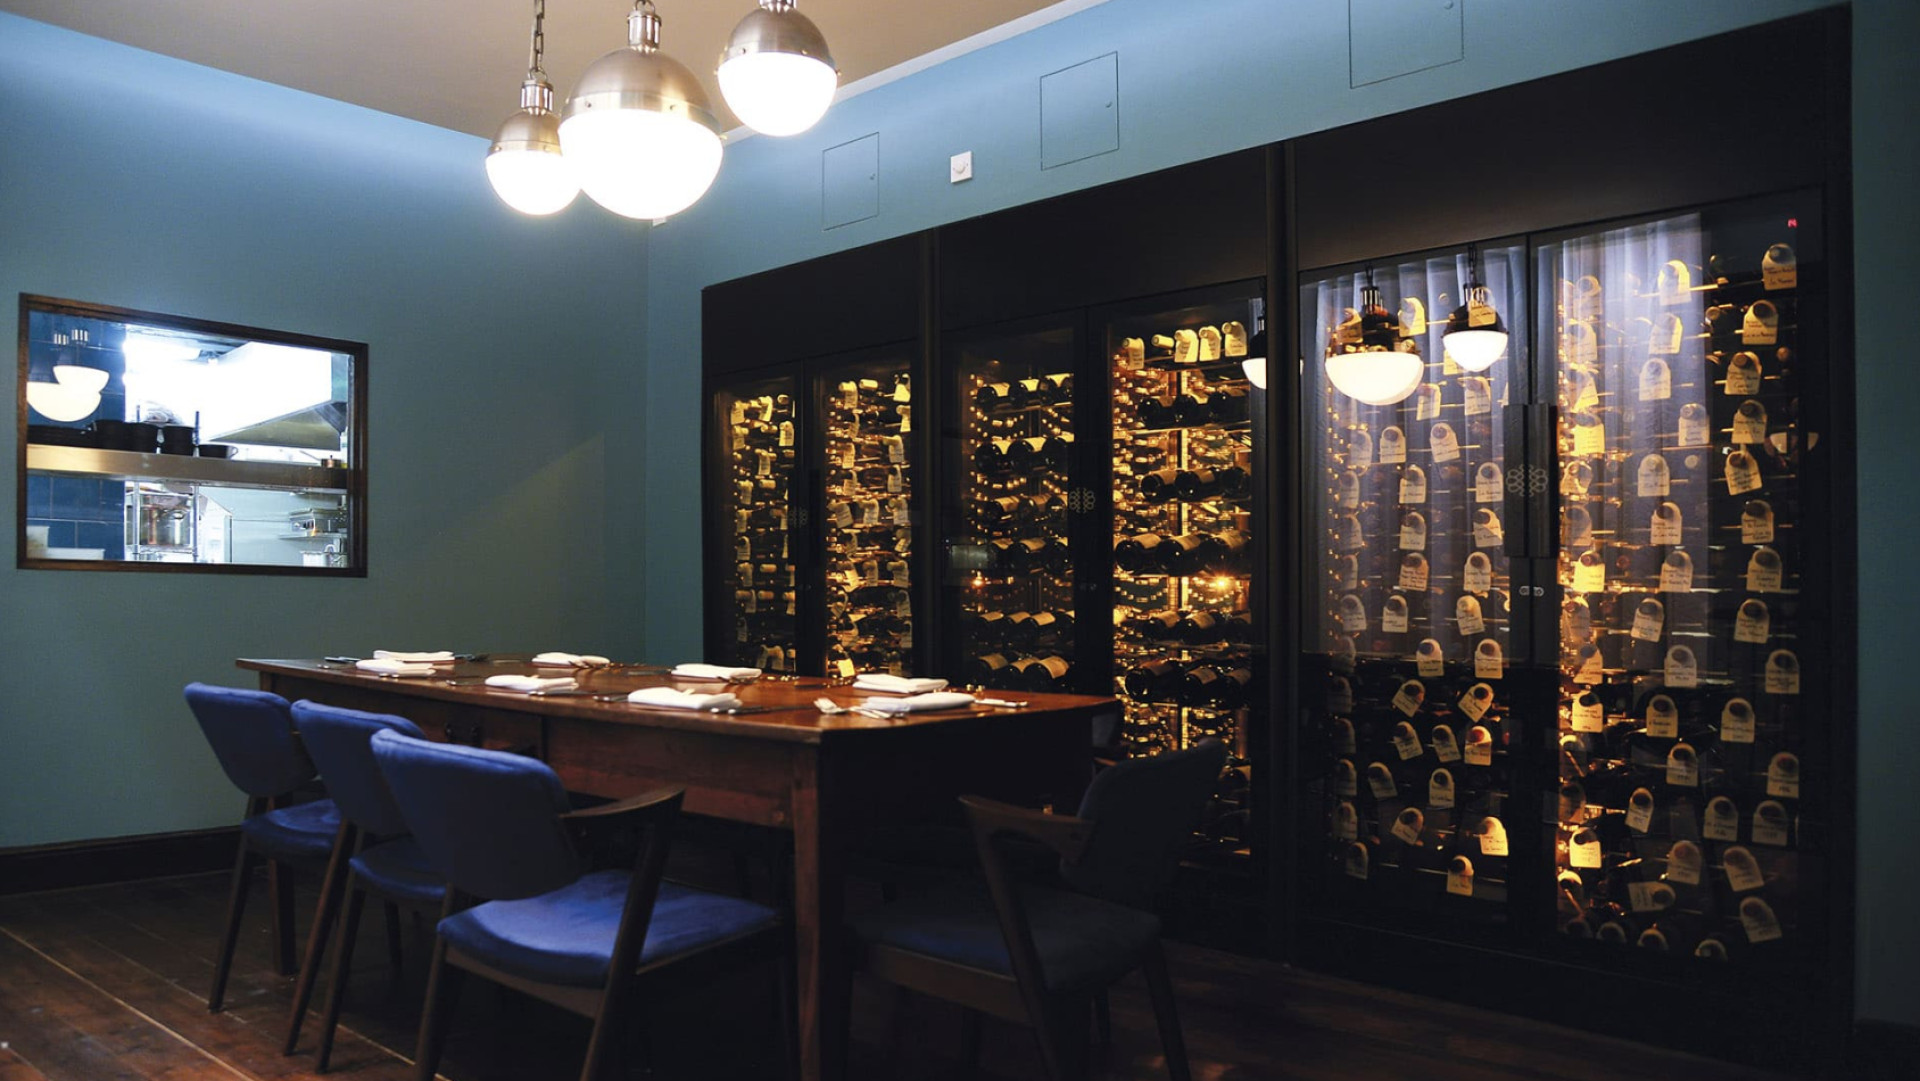 Découvrez les plus belles installations et agencements de restaurant, hôtel, bar à vin dans lesquels nos vitrines à vin et rangements permettent de réaliser les designs d'intérieur les plus originaux.